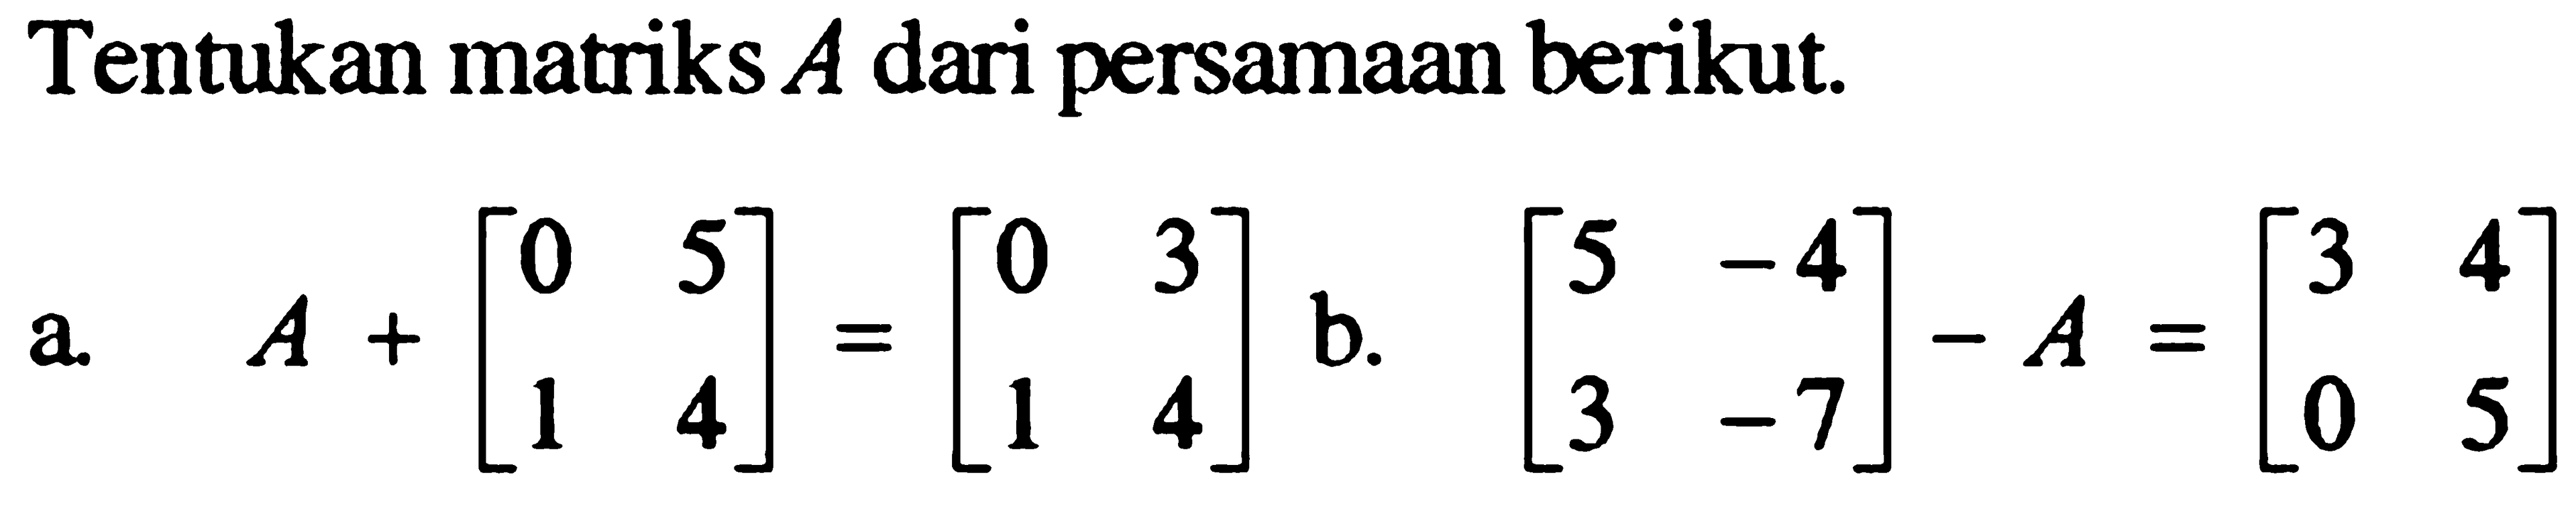 Tentukan matriks A dari persamaan berikut. a. A+[0 5 1 4]=[0 3 1 4] b. [5 -4 3 -7]-A=[3 4 0 5]